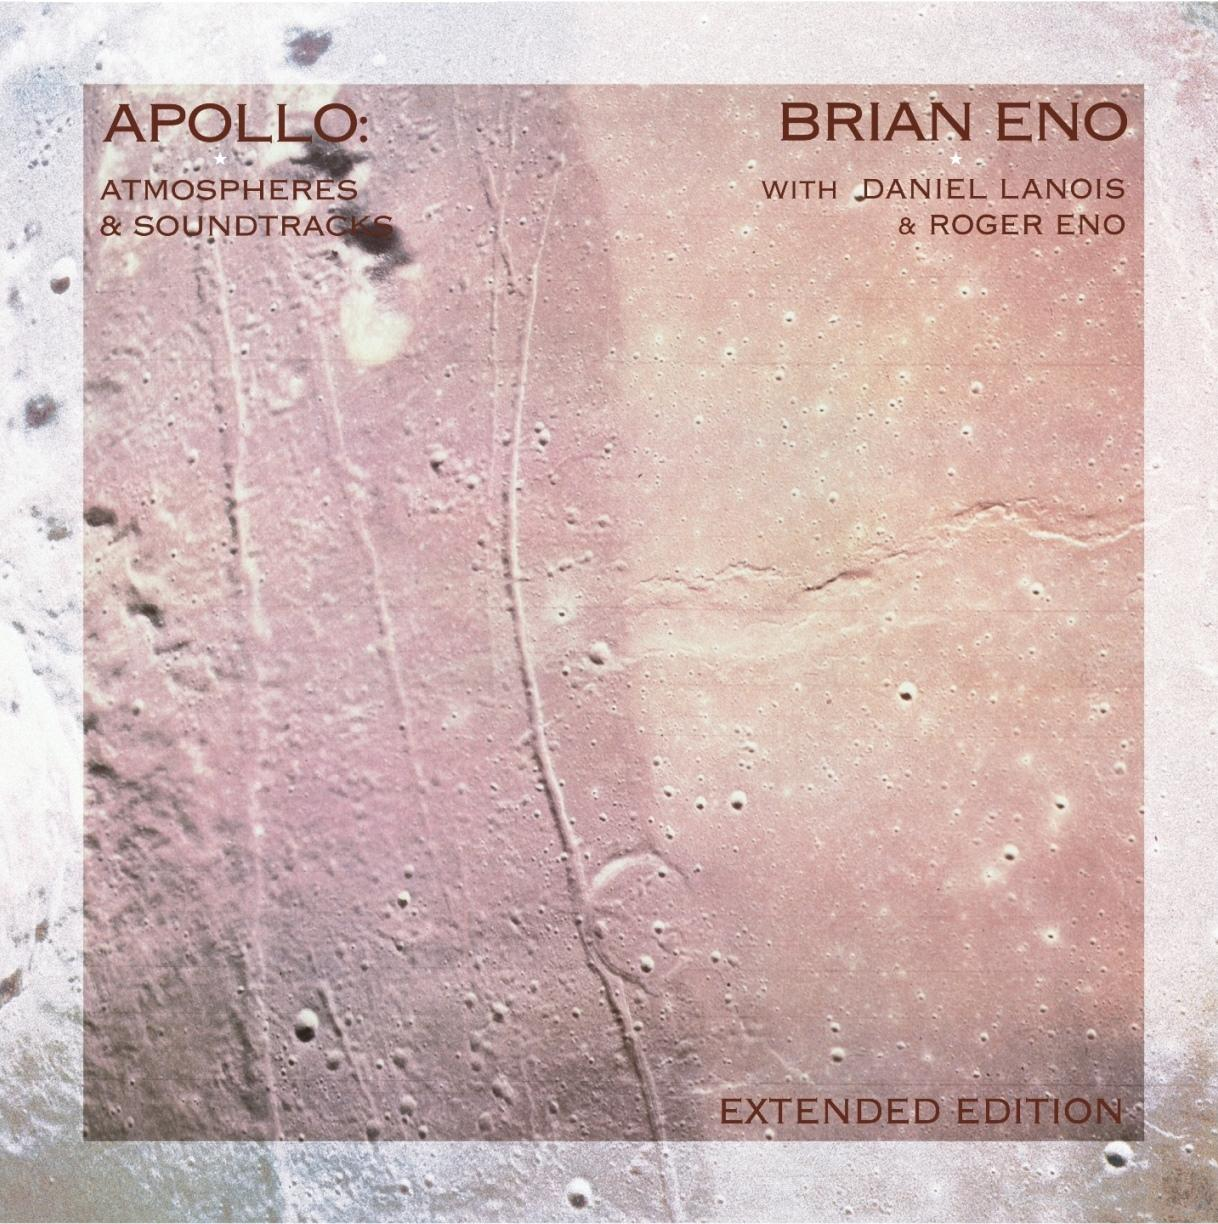 Brian Eno - Apollo: Atmospheres (Ltd.2LP) And (Vinyl) - Soundtracks